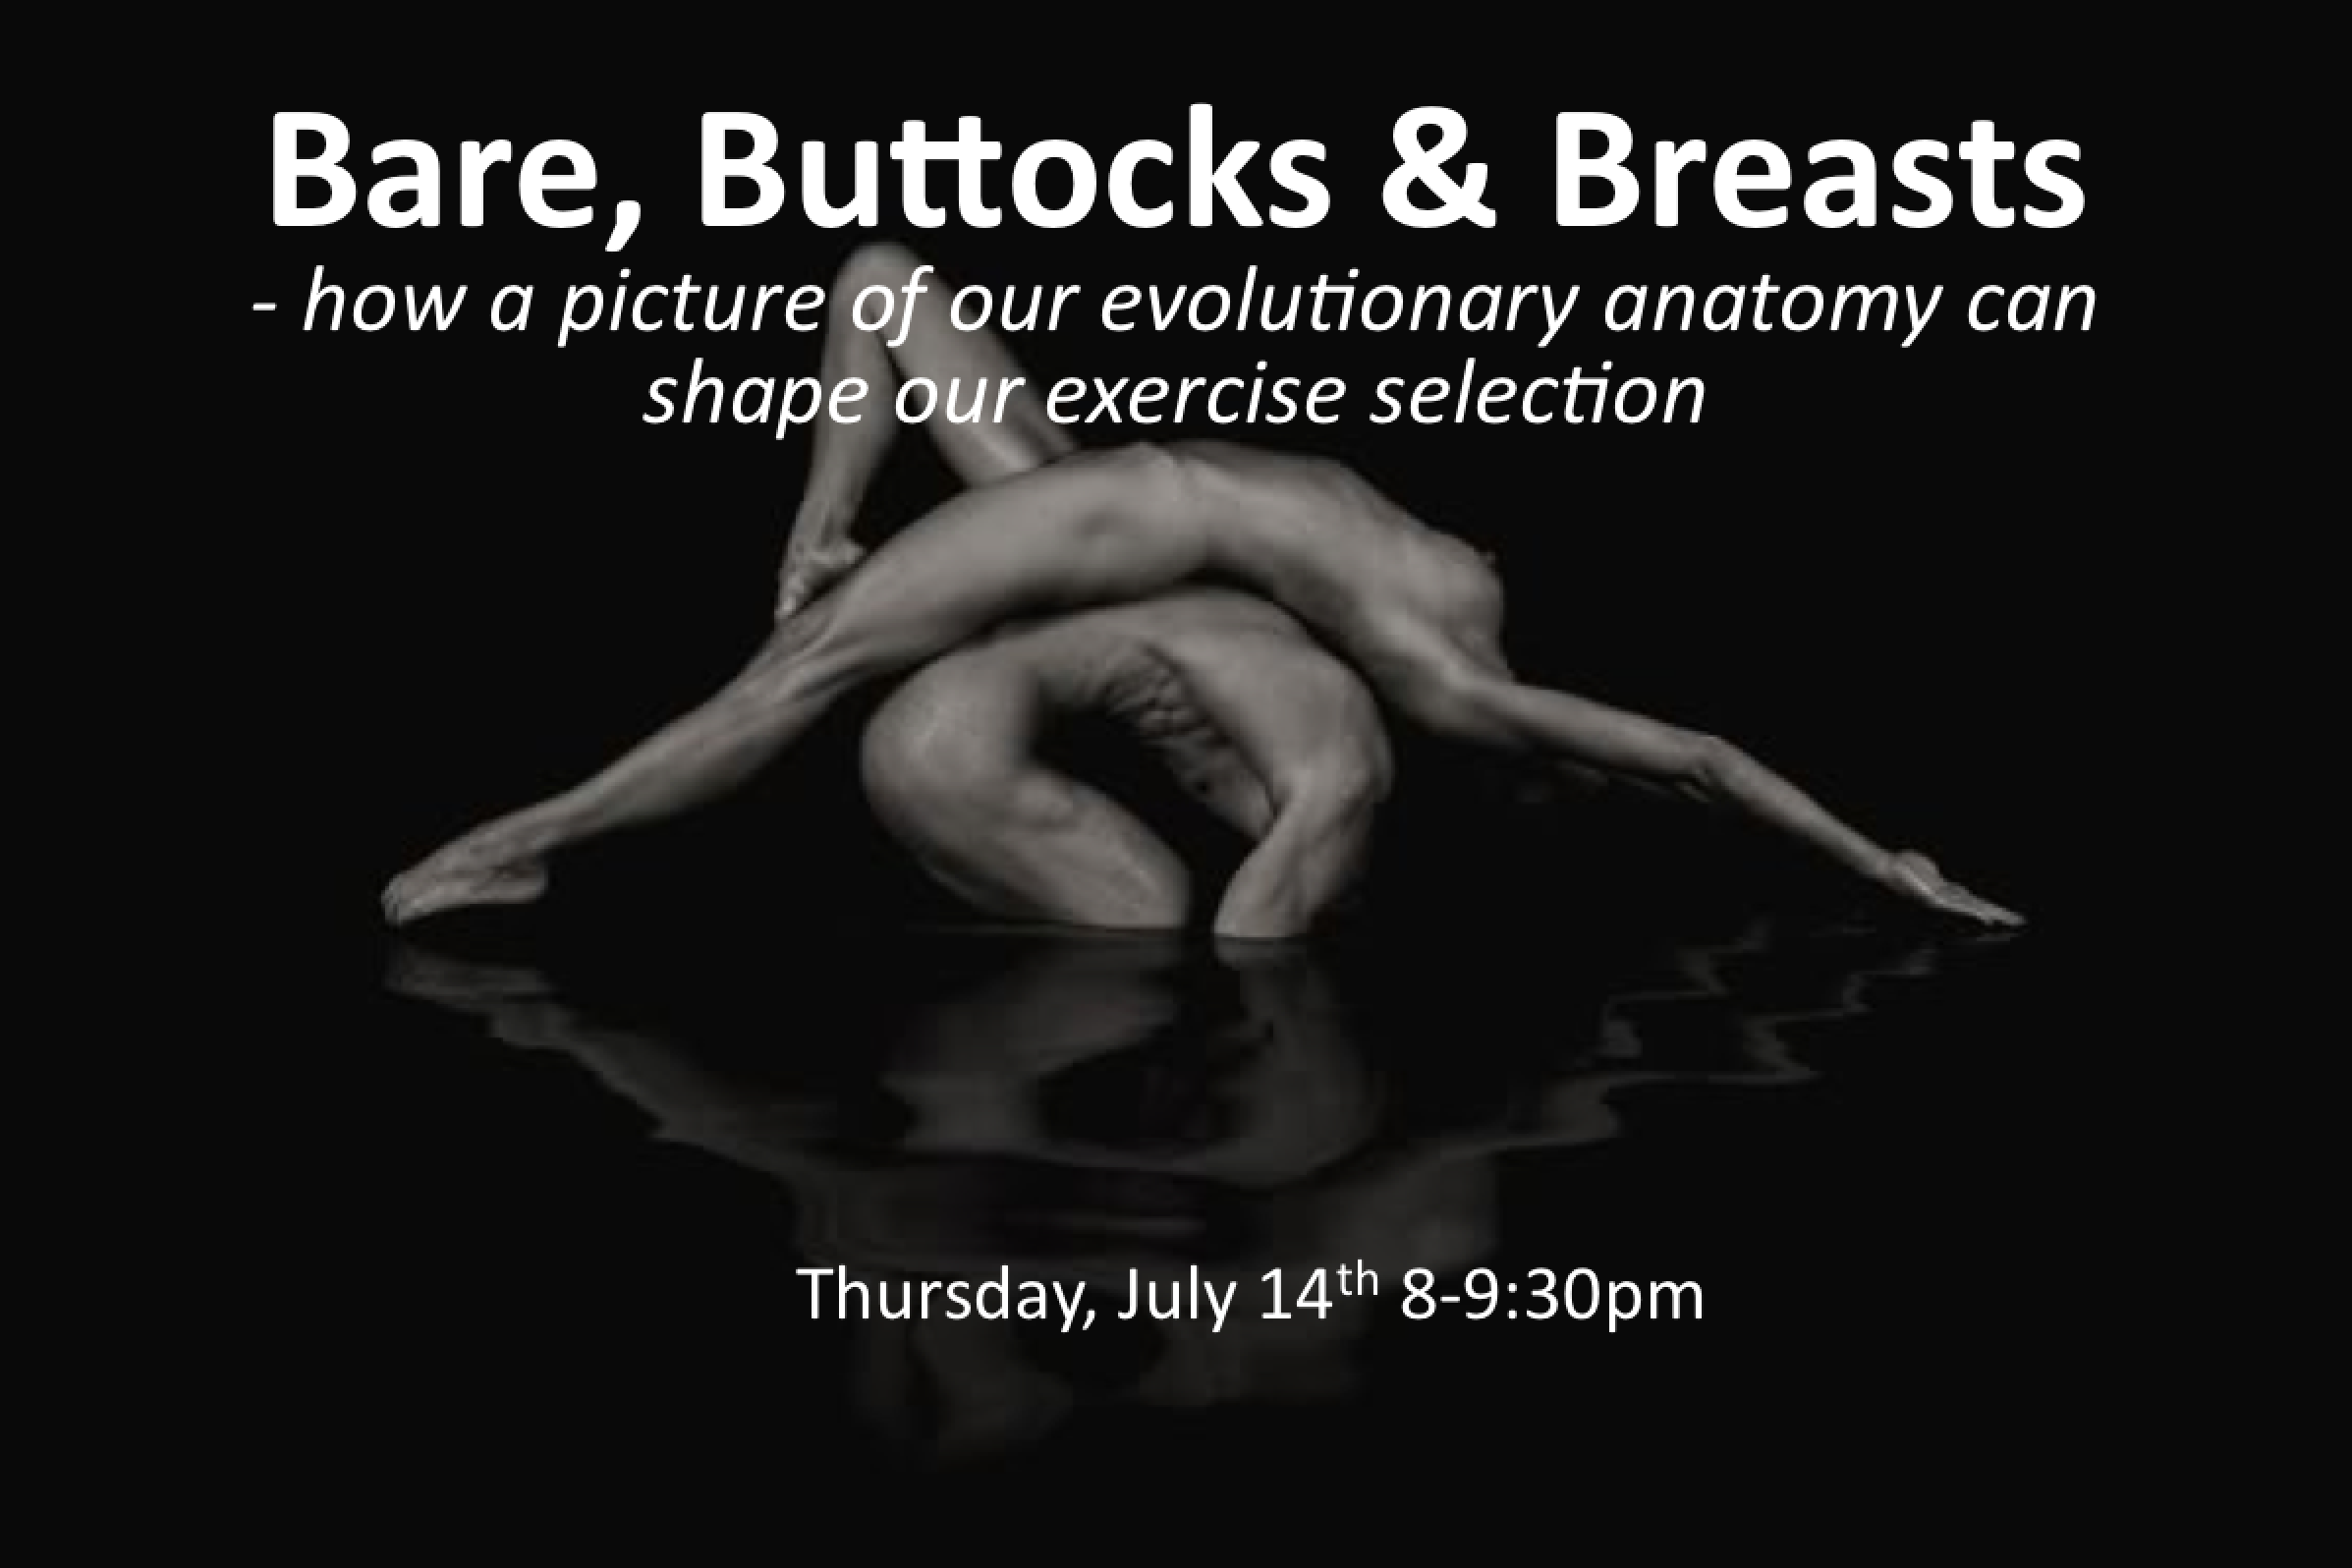 Bare, Buttocks & Breasts Webinar